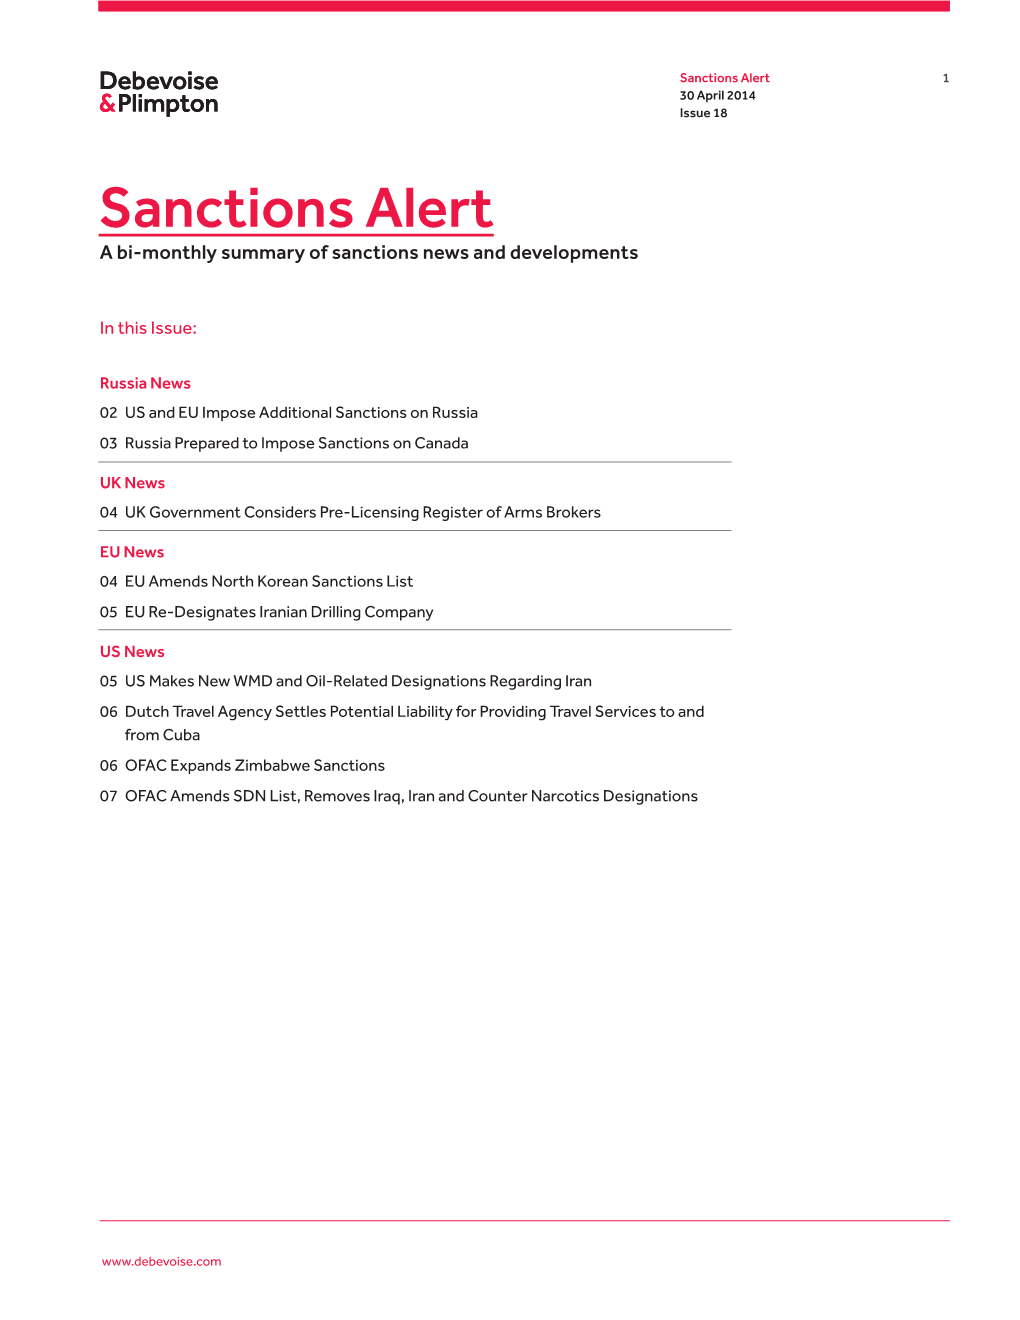 Sanctions Alert 1 30 April 2014 Issue 18